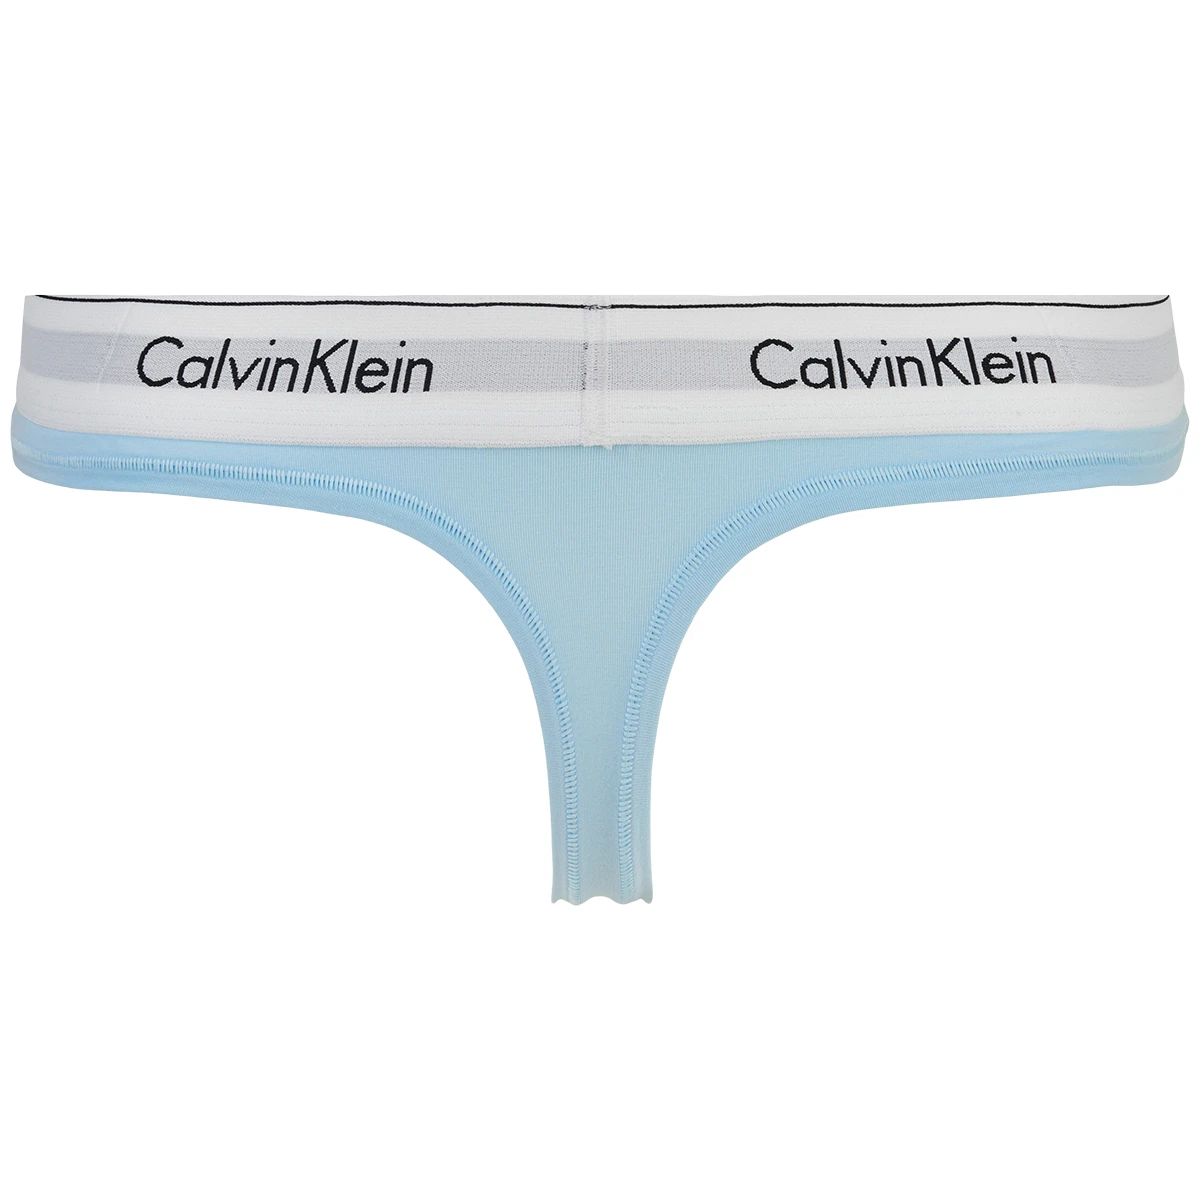 Calvin Klein g-string, blue • Price 13.74 €